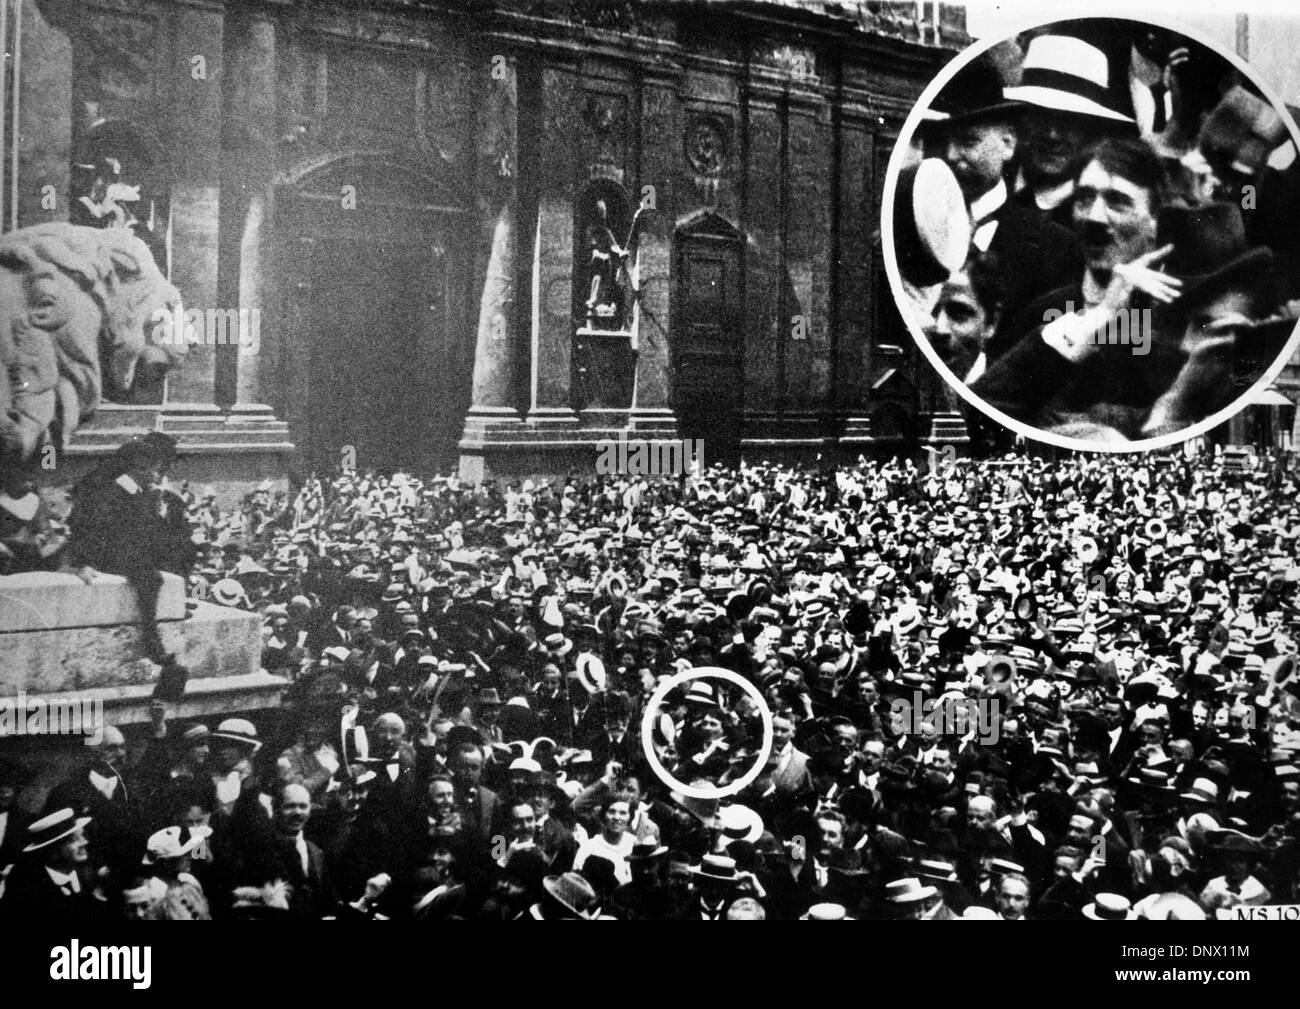 Agosto 1, 1914 - Munich, Alemania - El líder nazi Adolf Hitler en medio de la multitud en Munich por el estallido de la Primera Guerra Mundial en 1914. Foto tomada por Max Hoffman, que posteriormente se convirtió en fotógrafo oficial de Hitler. (Crédito de la Imagen: © KEYSTONE Pictures/ZUMAPRESS.com) Foto de stock